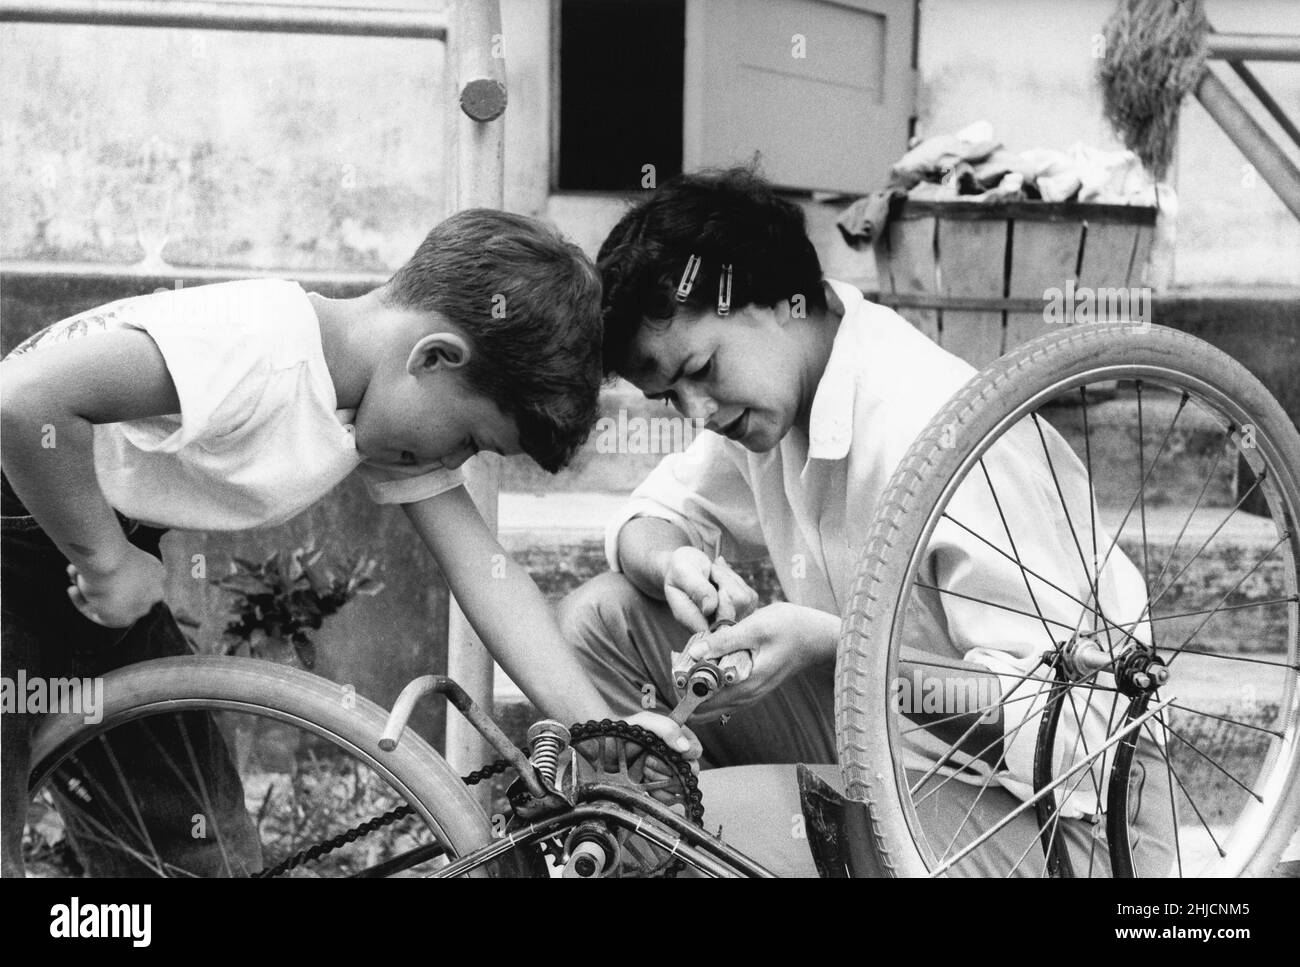 Photographie en noir et blanc d'une mère qui aide son fils à fixer sa bicyclette.Photographie tirée d'un magazine historique Cosmo.1960s. Banque D'Images